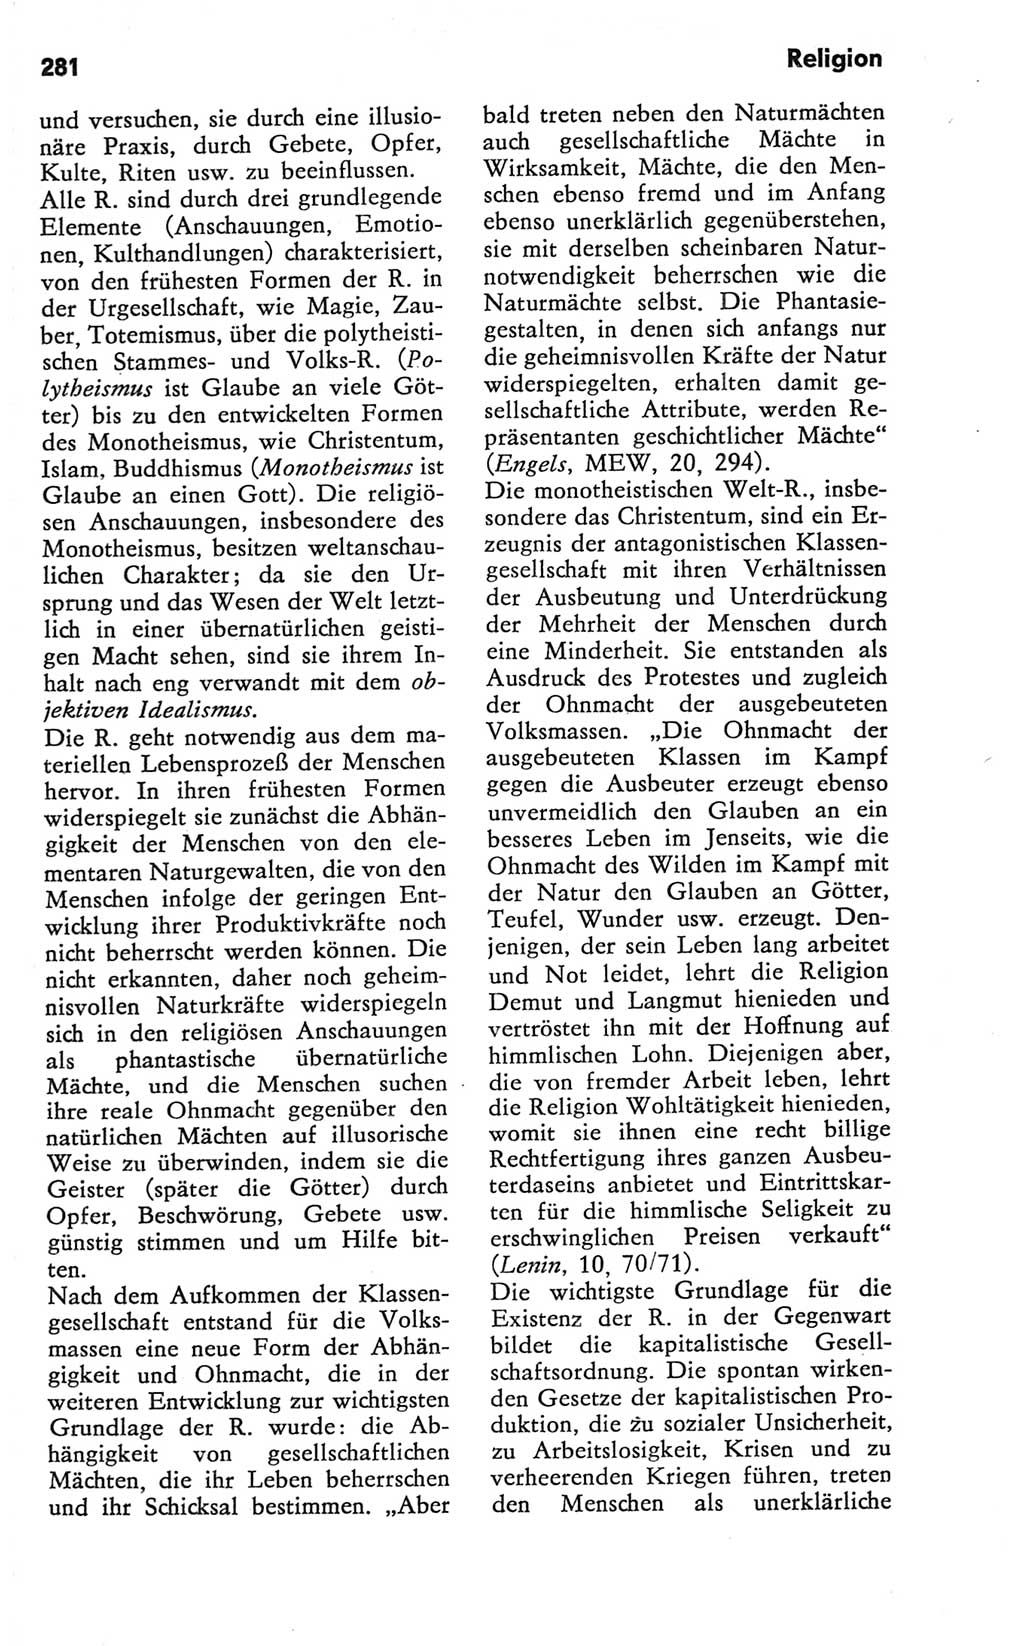 Kleines Wörterbuch der marxistisch-leninistischen Philosophie [Deutsche Demokratische Republik (DDR)] 1981, Seite 281 (Kl. Wb. ML Phil. DDR 1981, S. 281)